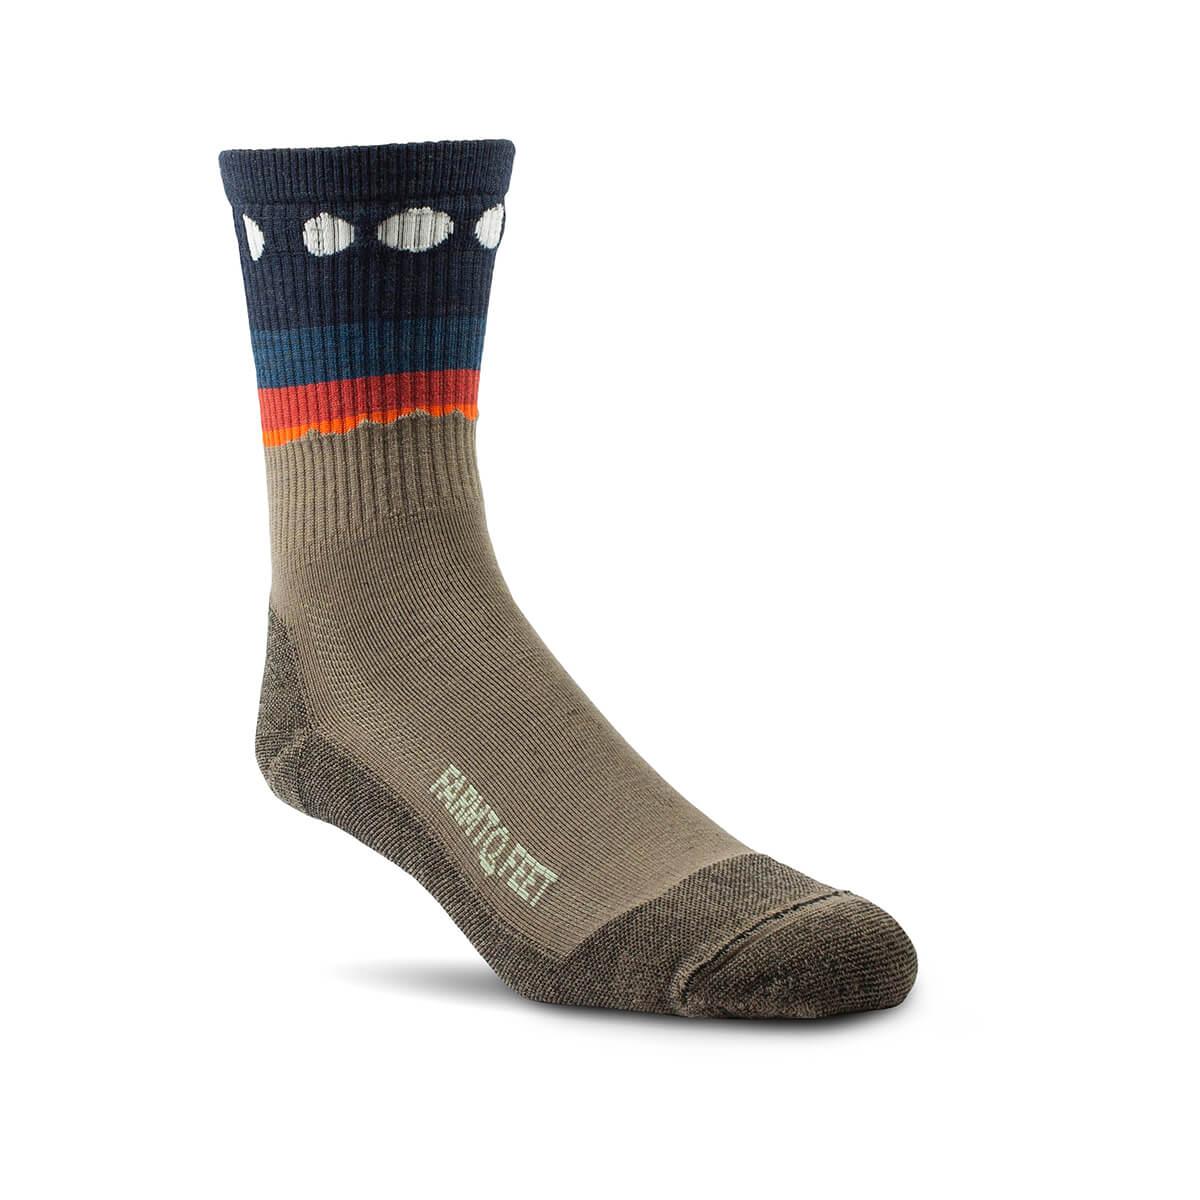  Flagstaff Socks